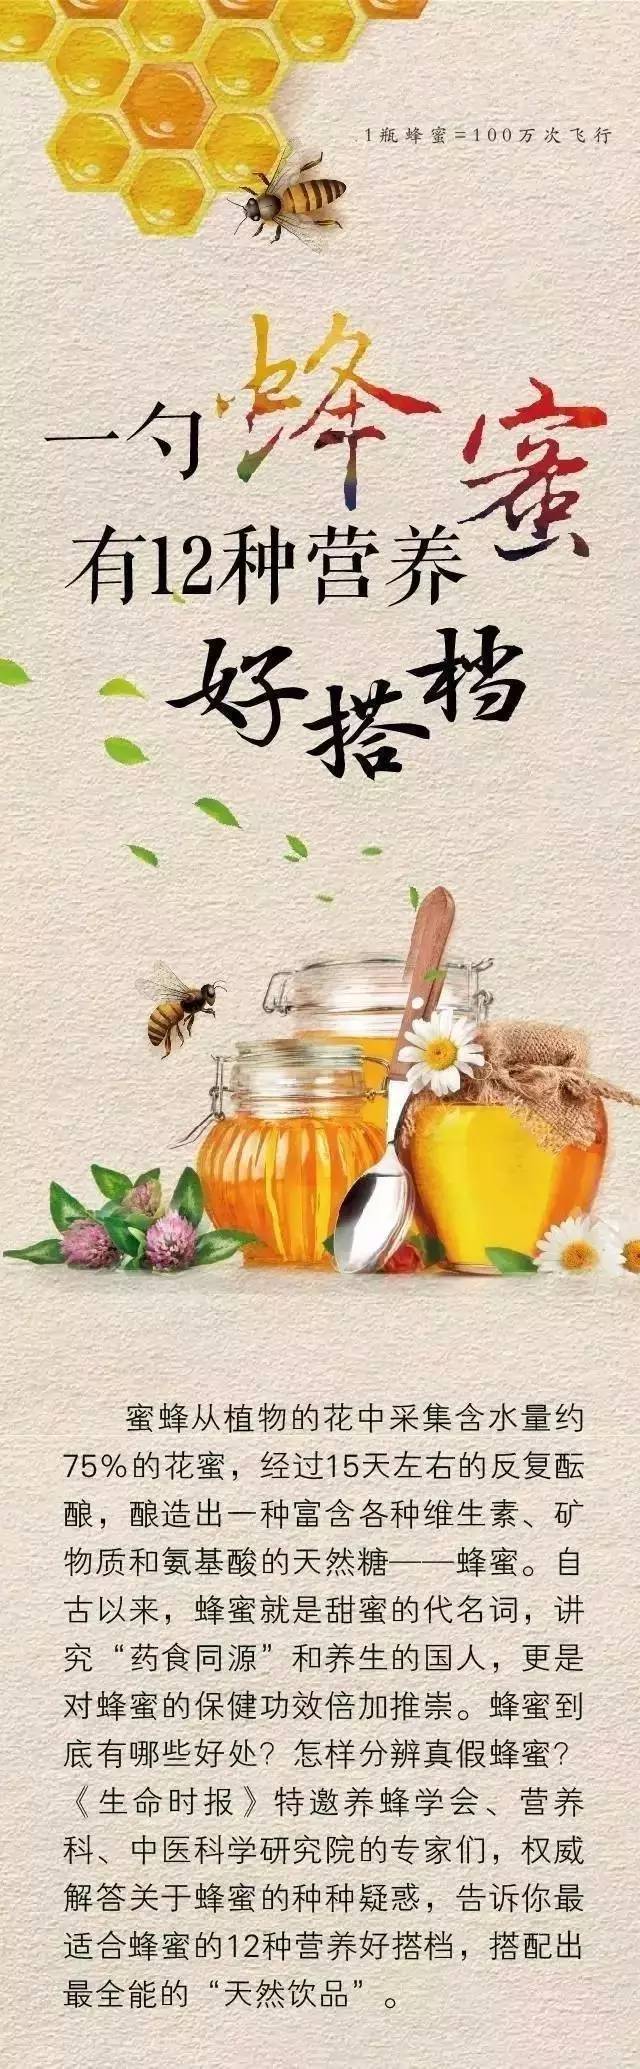 杏仁粉加蜂蜜 蜂蜜能直接敷脸吗 蜂蜜深 蜂蜜起泡能吃吗 吃蜂蜜得糖尿病吗